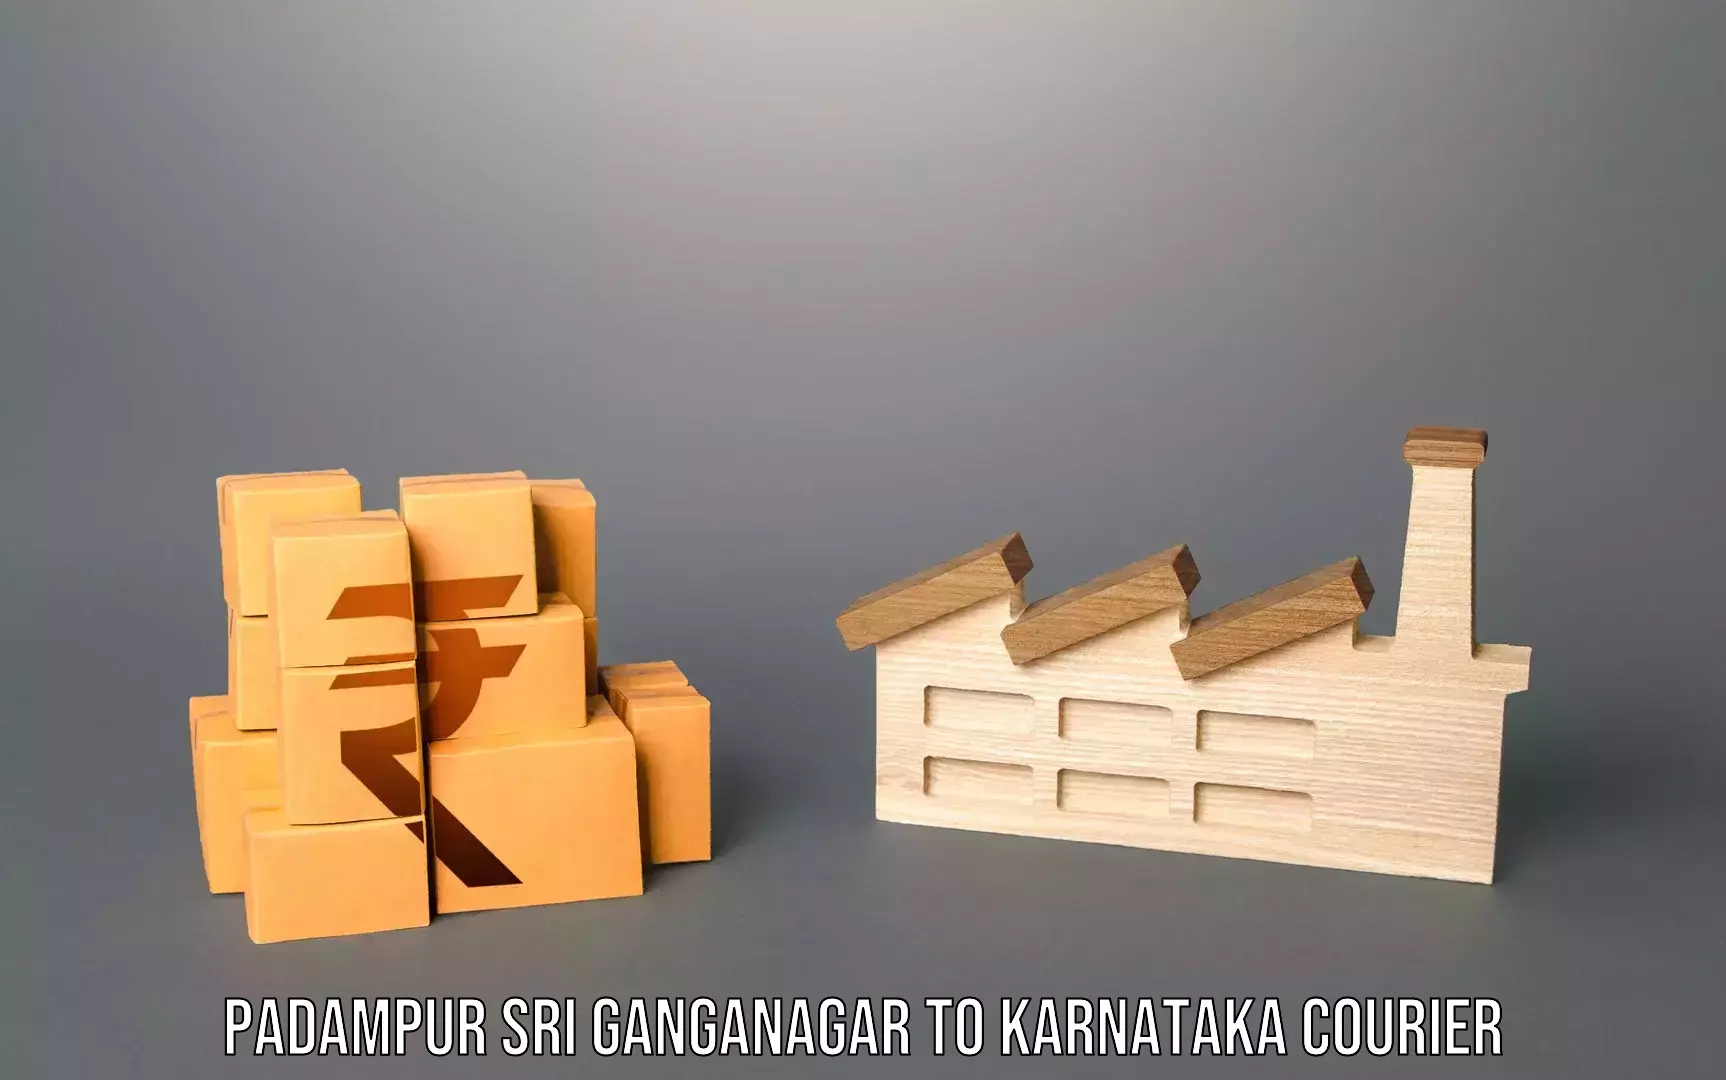 Luggage shipping planner Padampur Sri Ganganagar to Karnataka